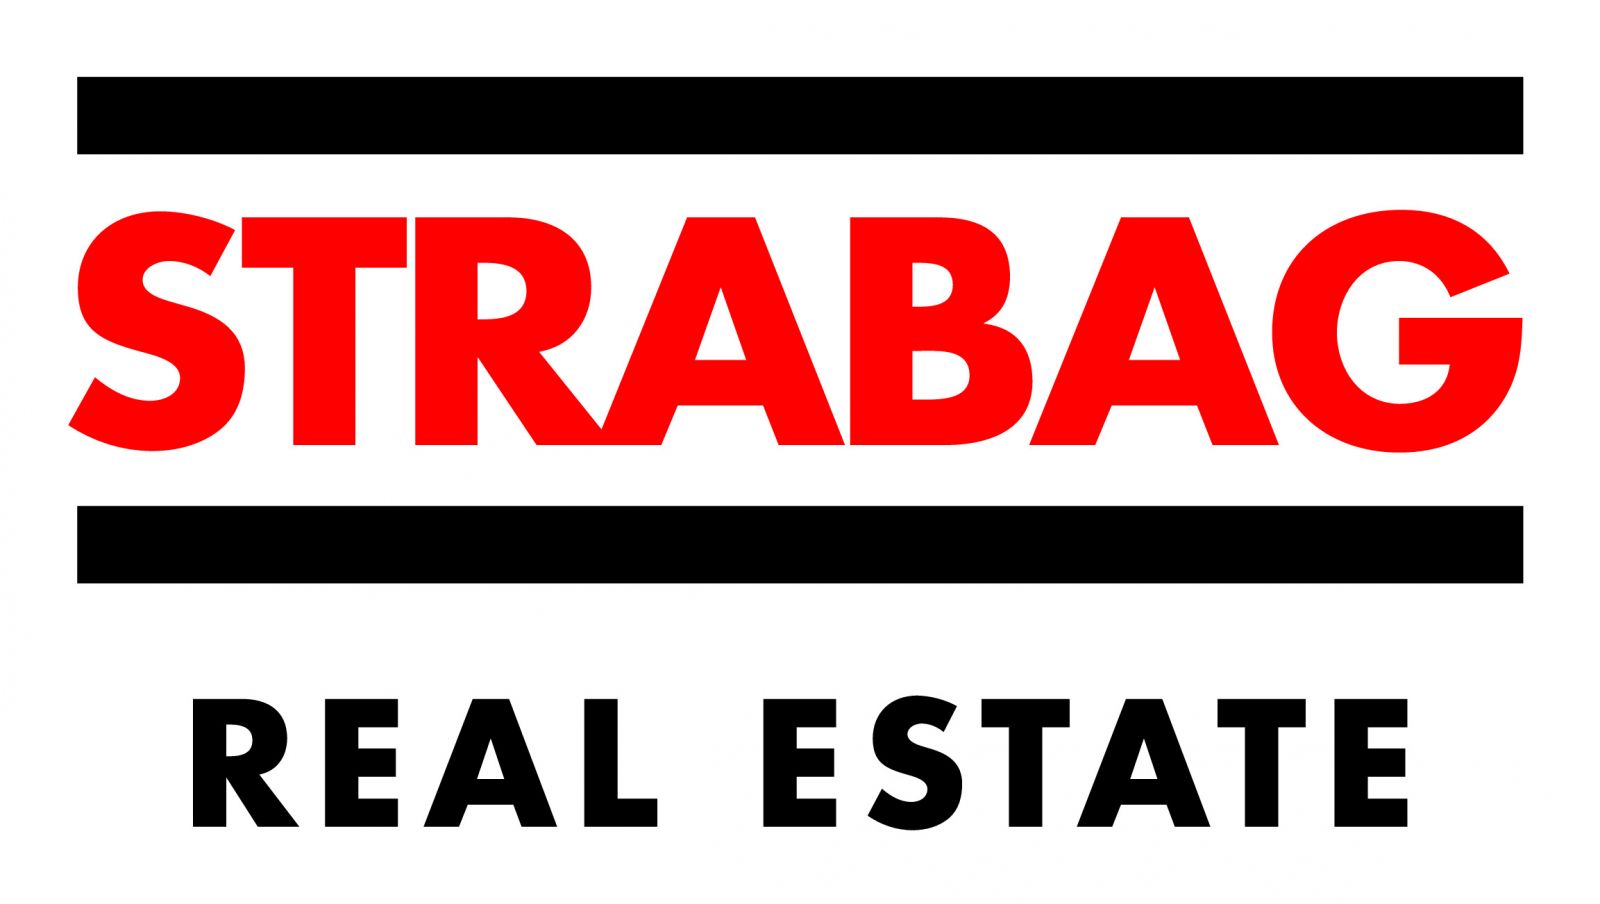 STRABAG Real Estate 